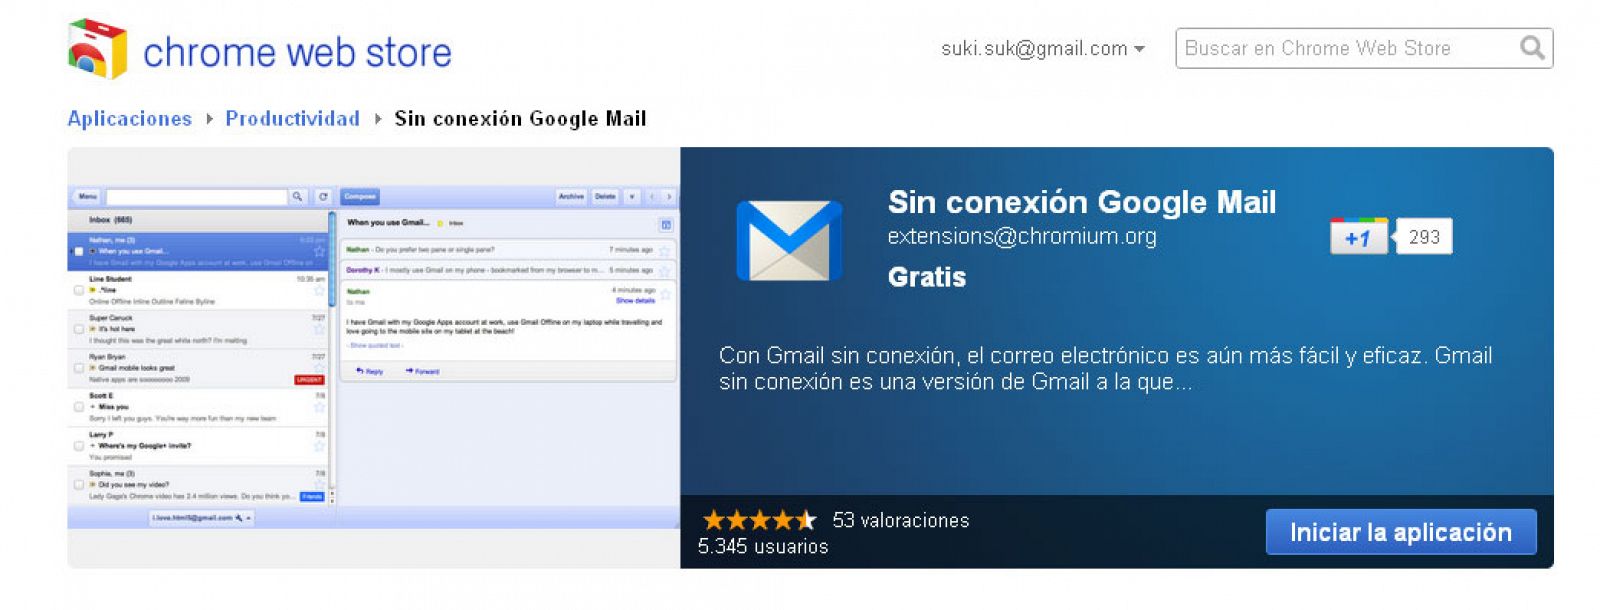 Para acceder al modo 'offline' en Gmail hay que instalarse una aplicación en la tienda de Chrome, el navegador de Google